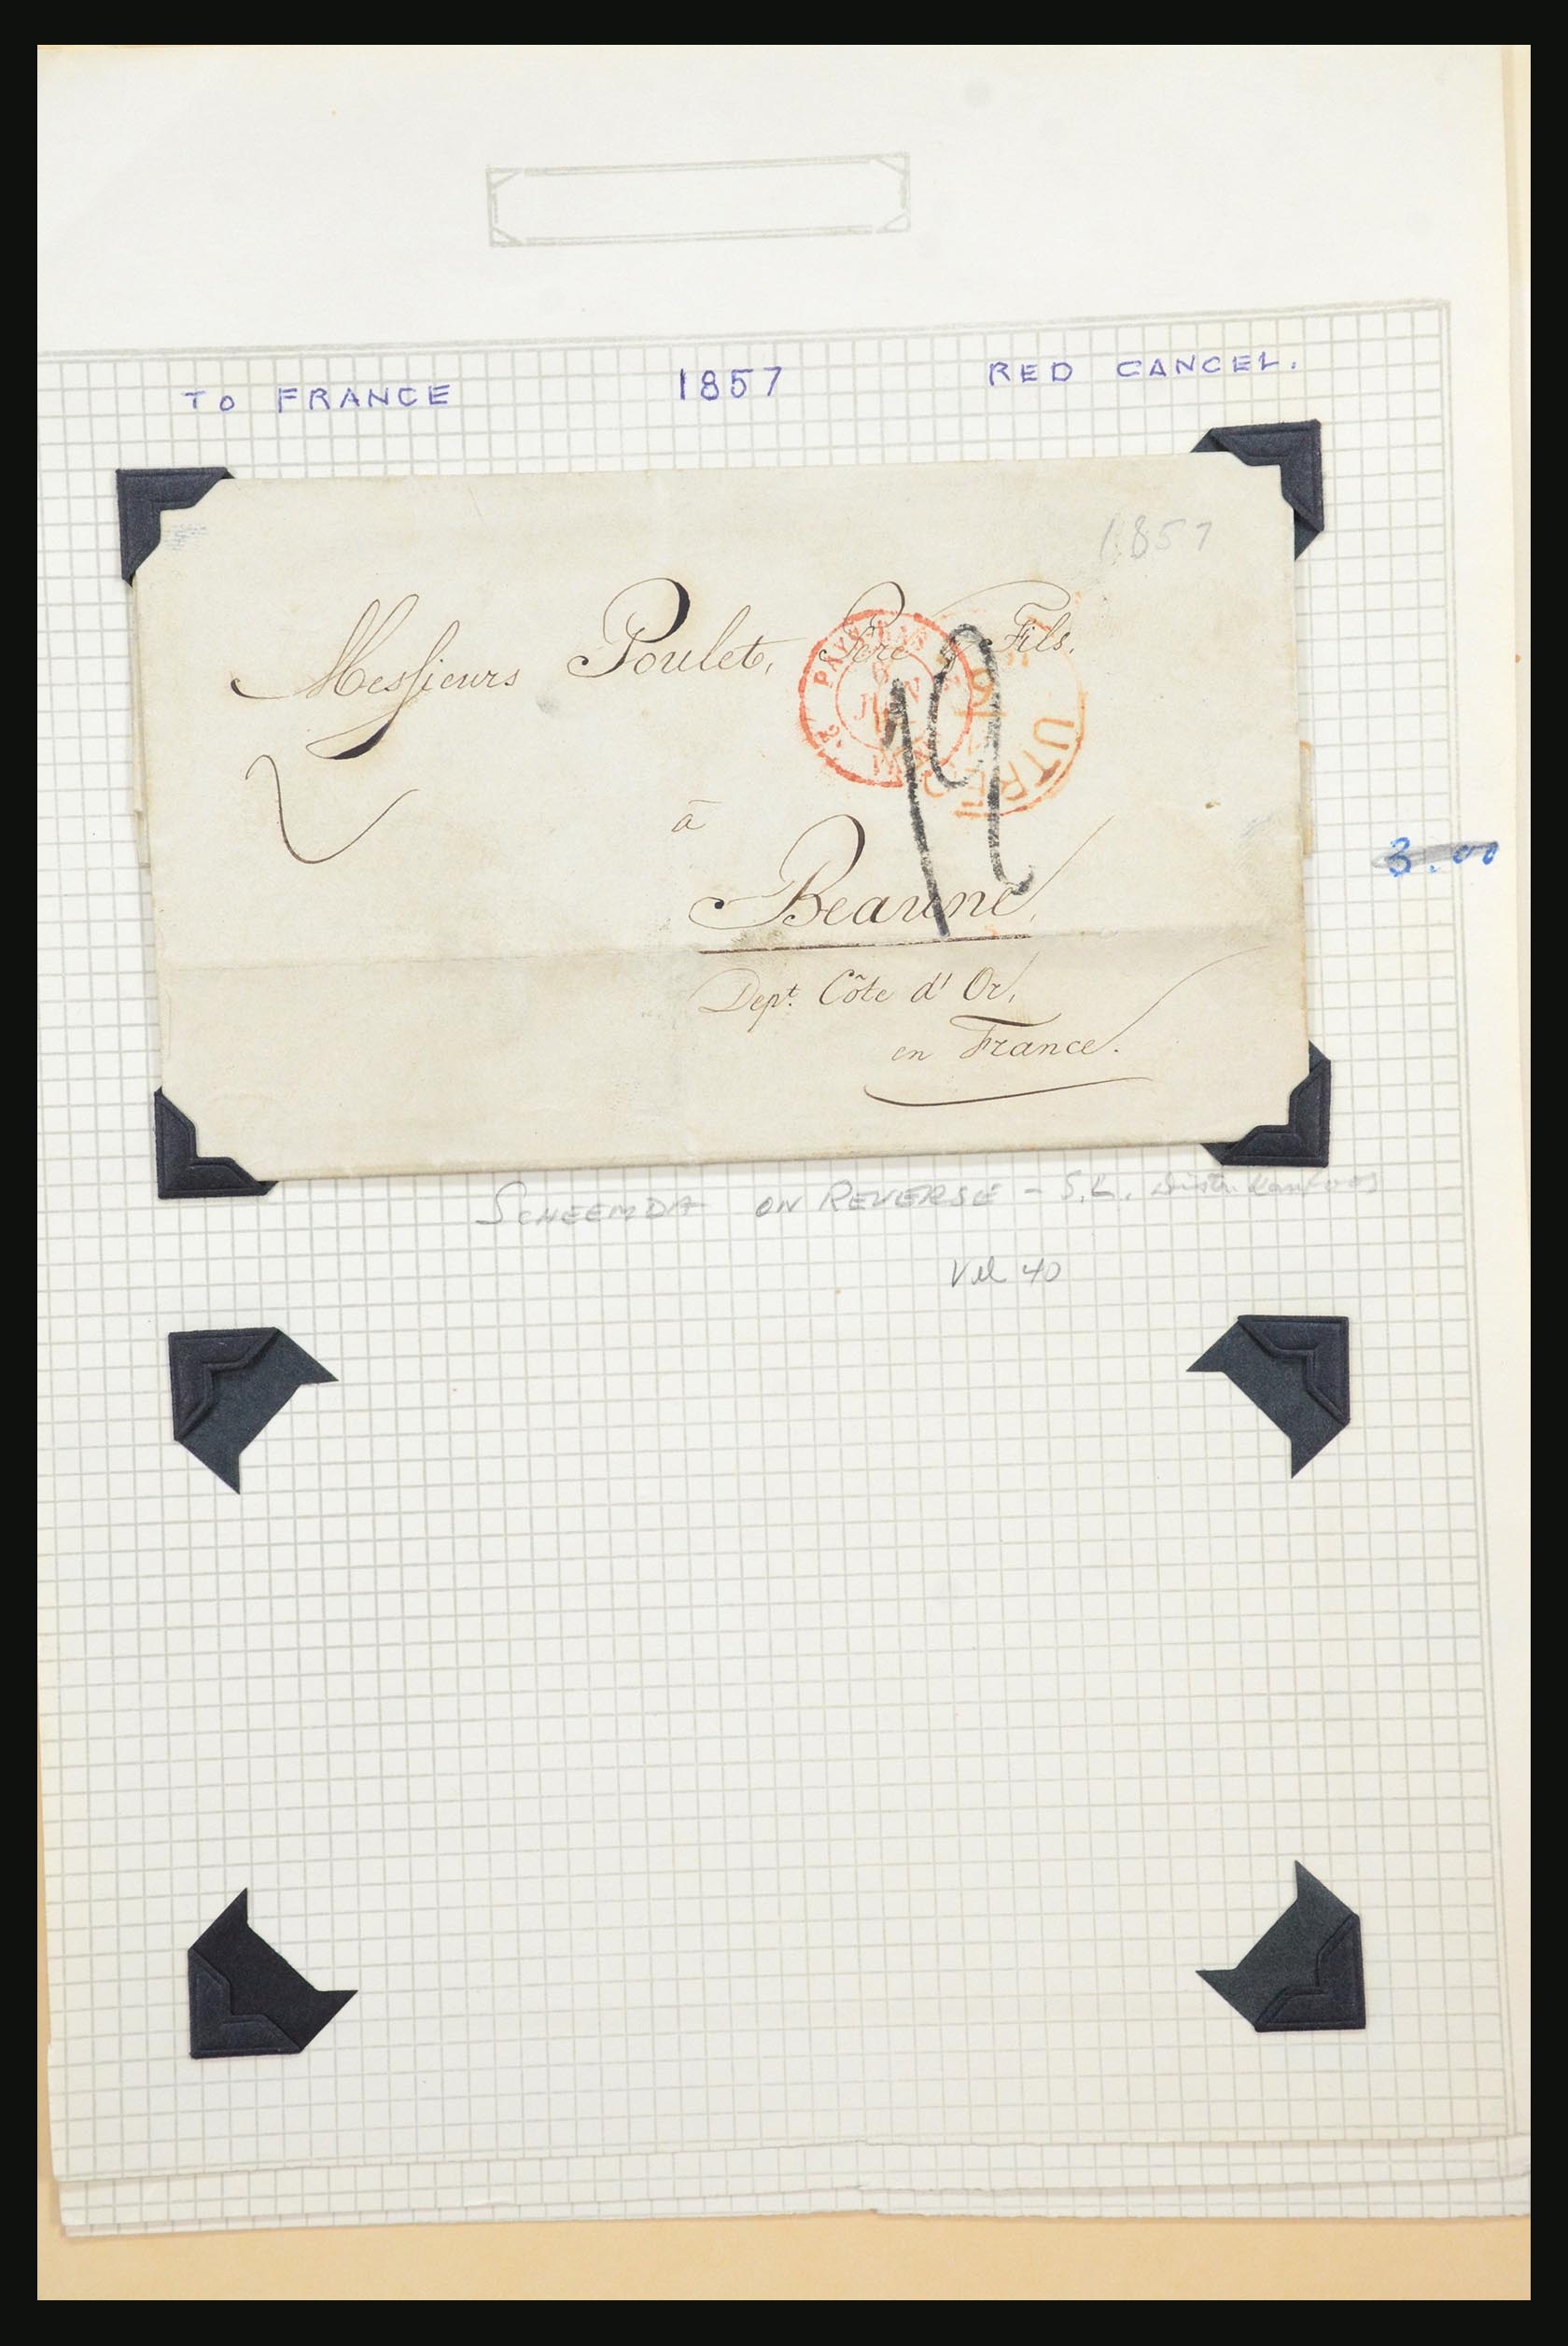 31567 035 - 31567 Nederland brieven 1687-1869.